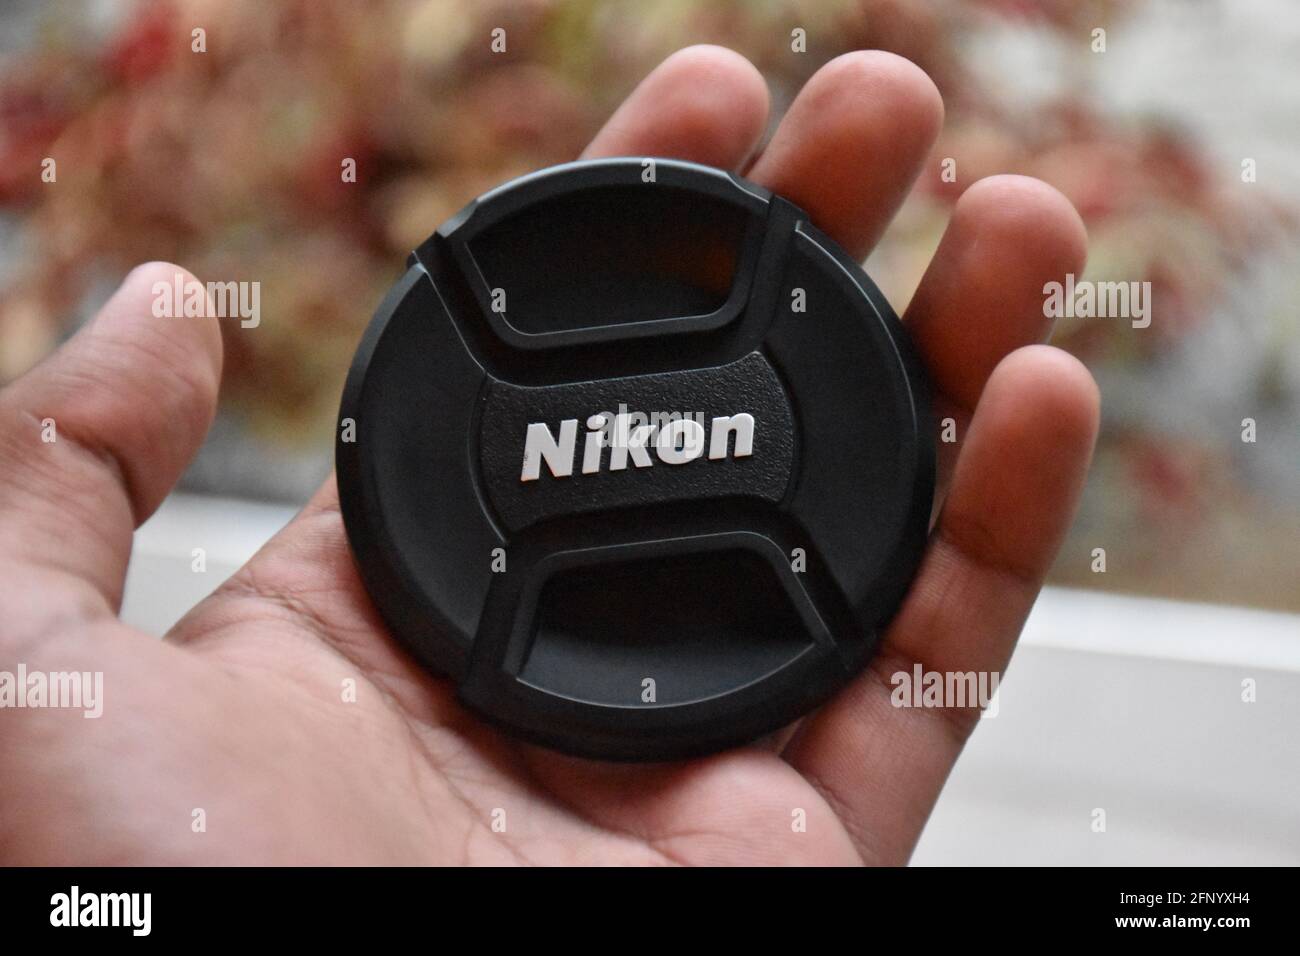 a nikon lens cap on a hand Stock Photo